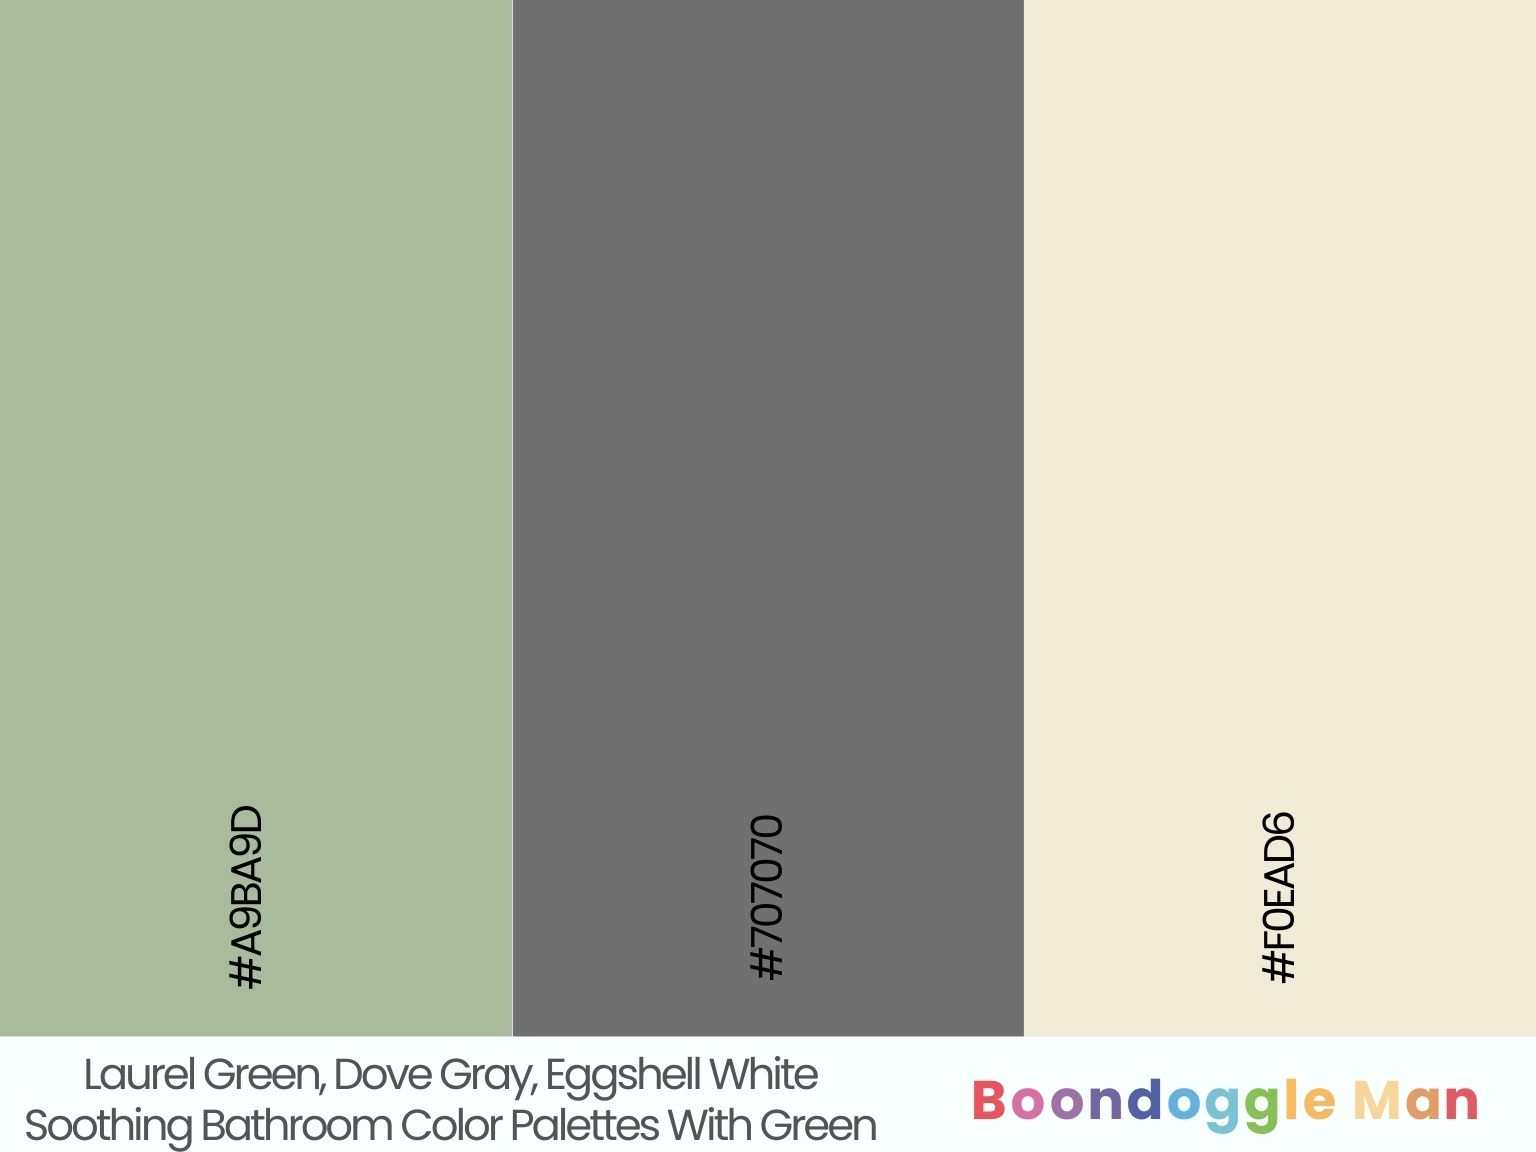 Laurel Green, Dove Gray, Eggshell White